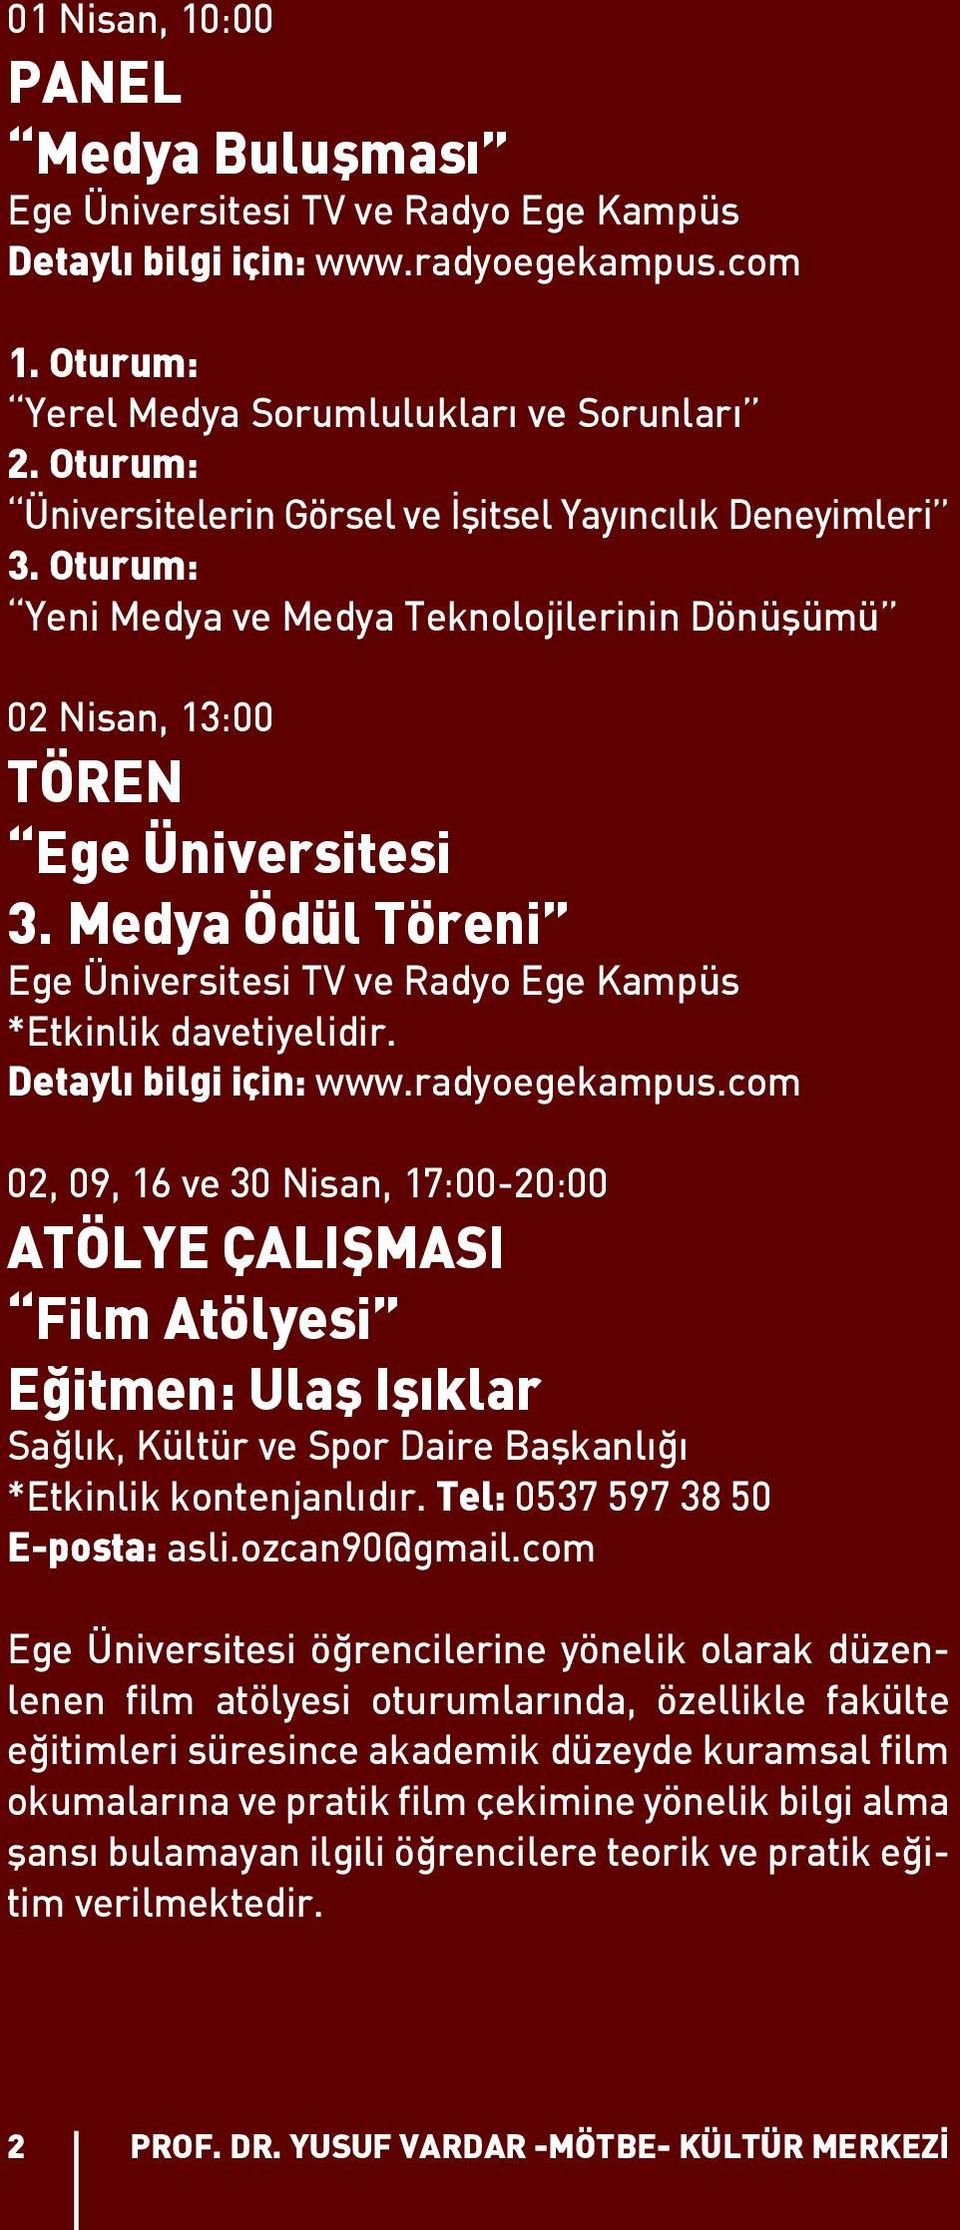 Medya Ödül Töreni Ege Üniversitesi TV ve Radyo Ege Kampüs *Etkinlik davetiyelidir. Detaylı bilgi için: www.radyoegekampus.